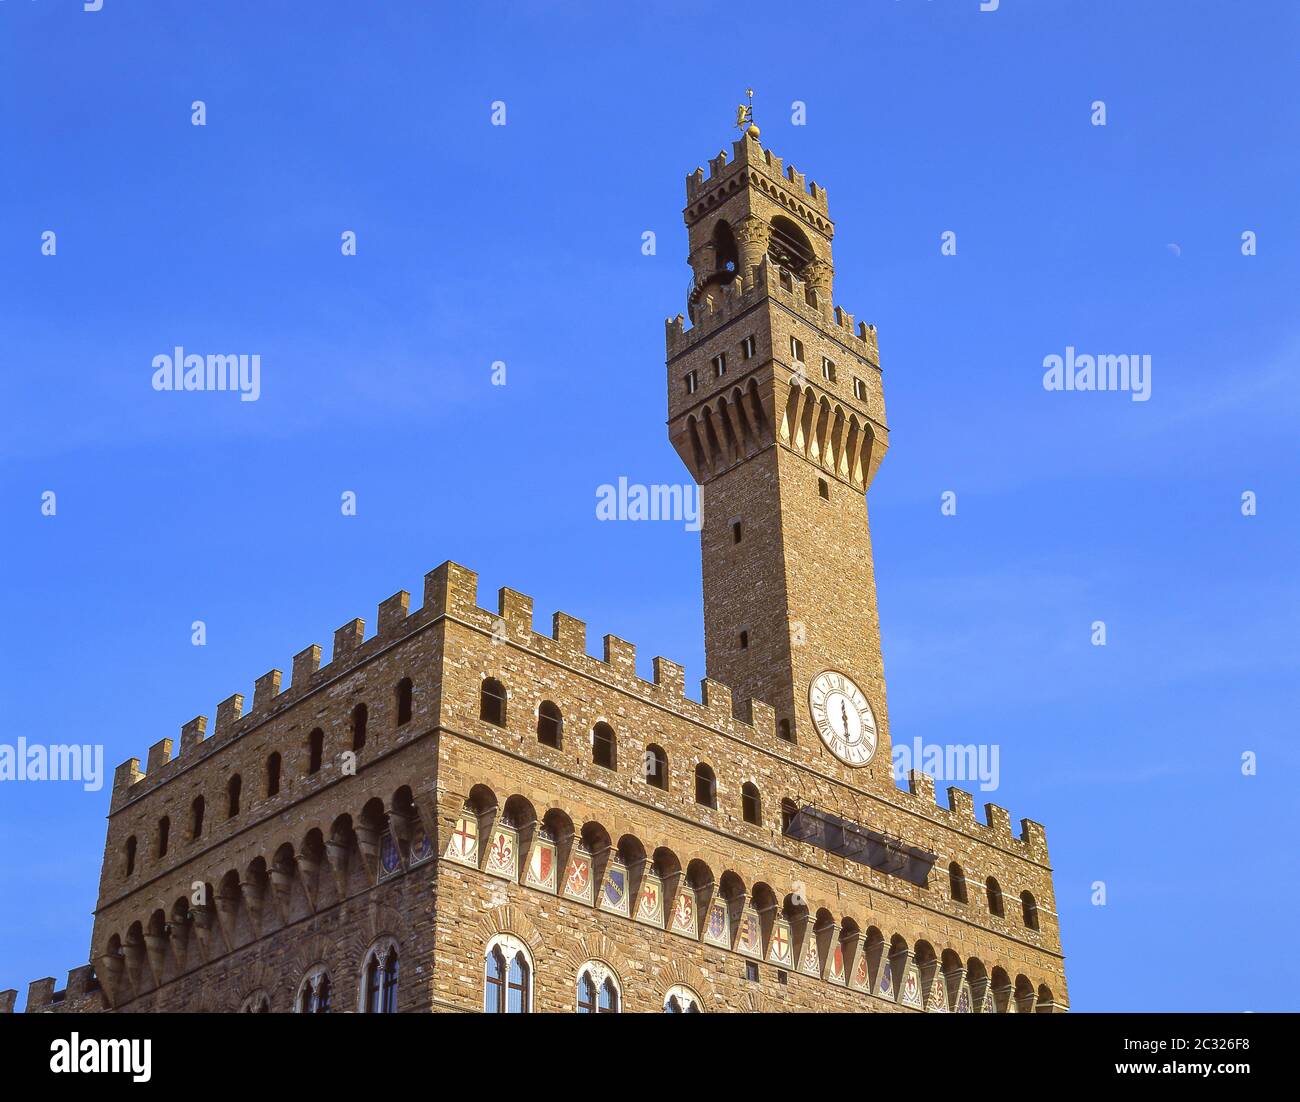 Palazzo Vecchio, Piazza della Signoria, Florencia (Florencia), Toscana, Italia Foto de stock